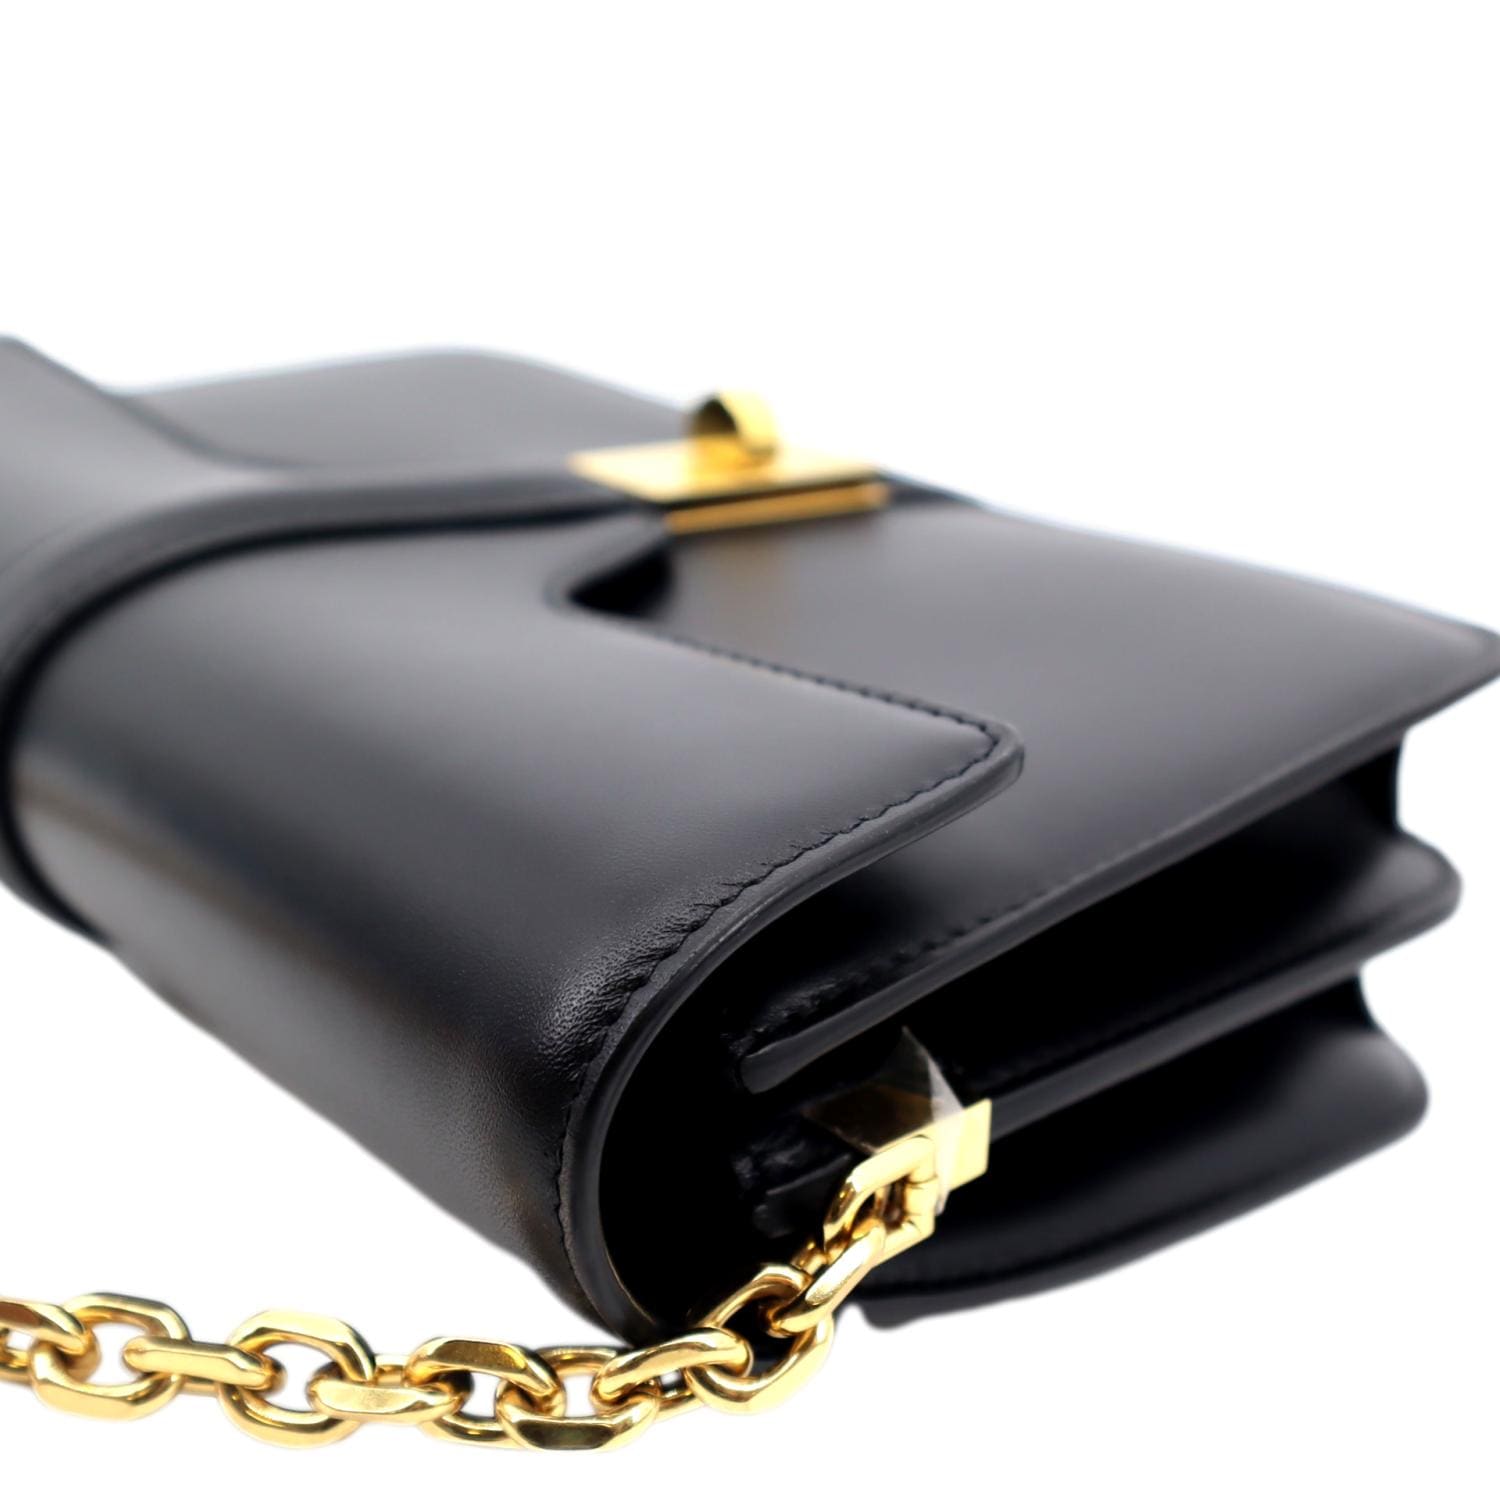 Black Celine C Bag Wallet On Chain